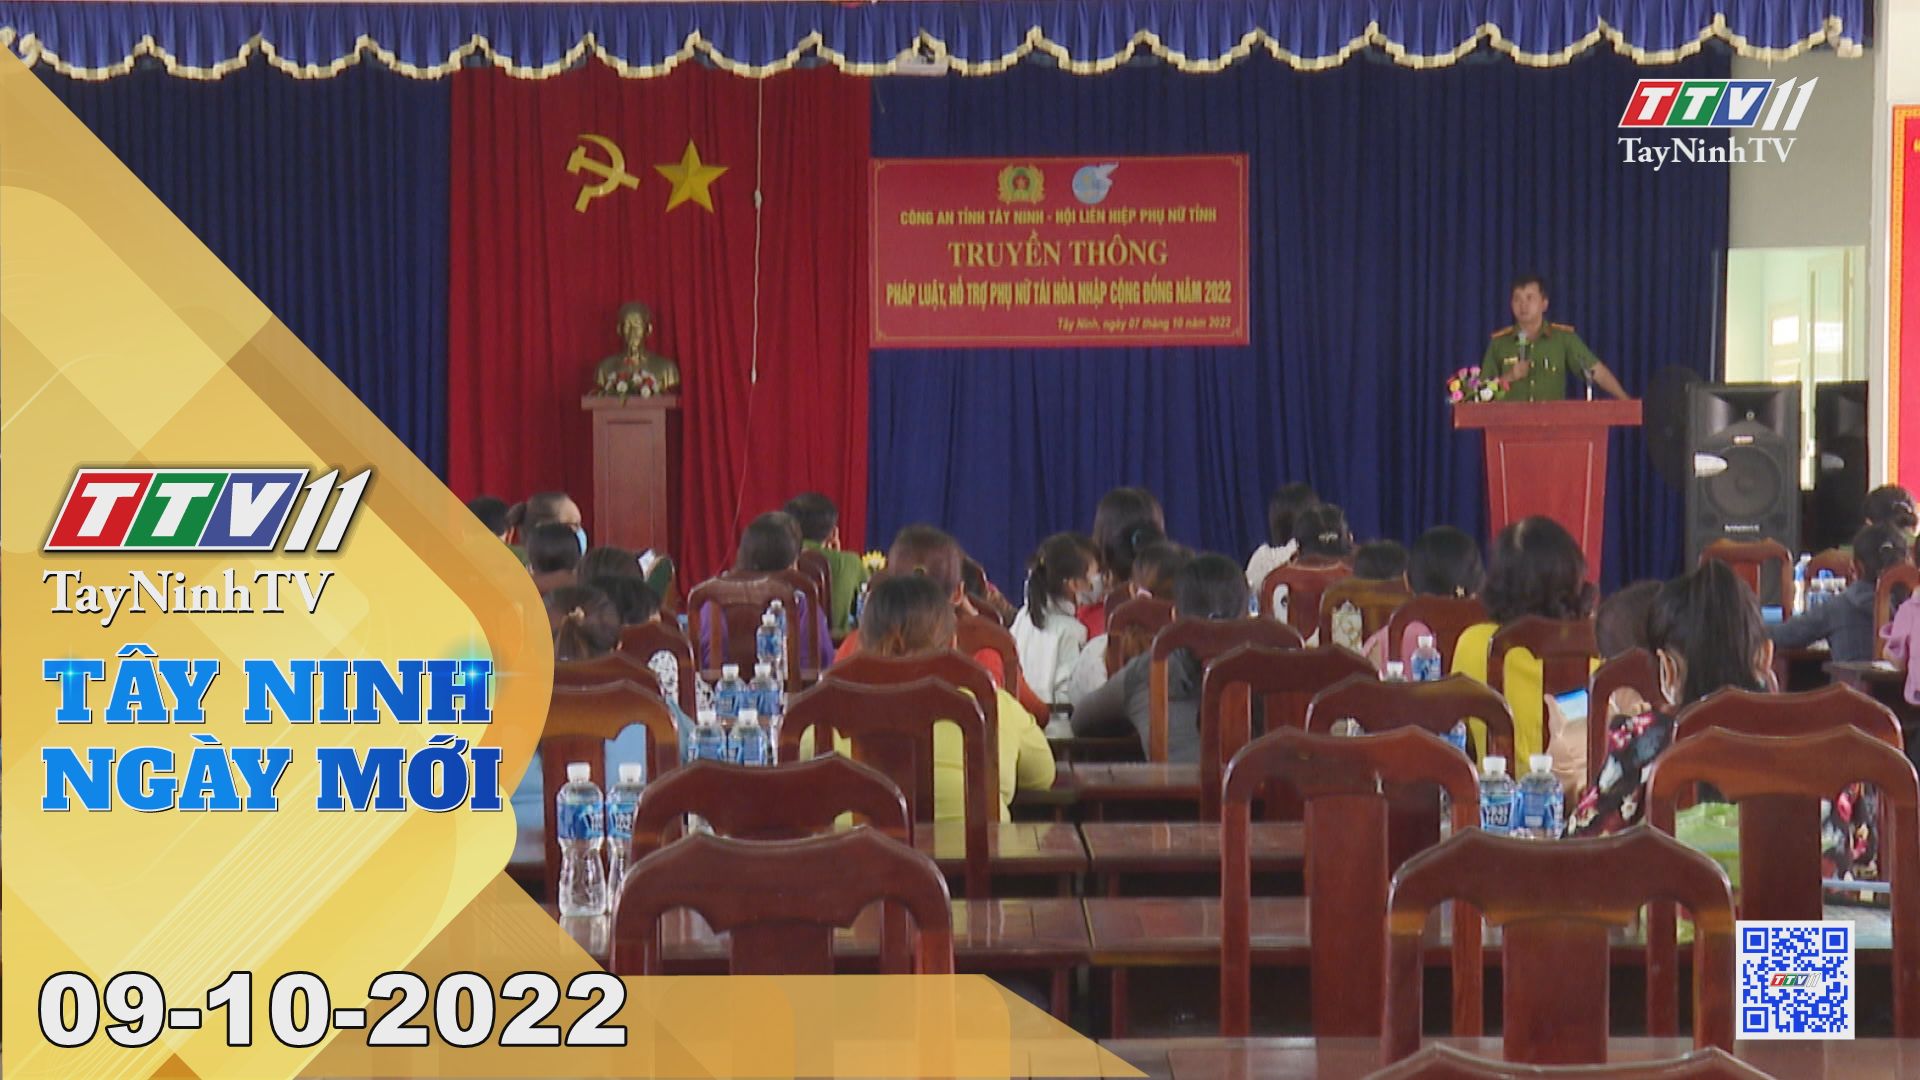 Tây Ninh ngày mới 09-10-2022 | Tin tức hôm nay | TayNinhTV